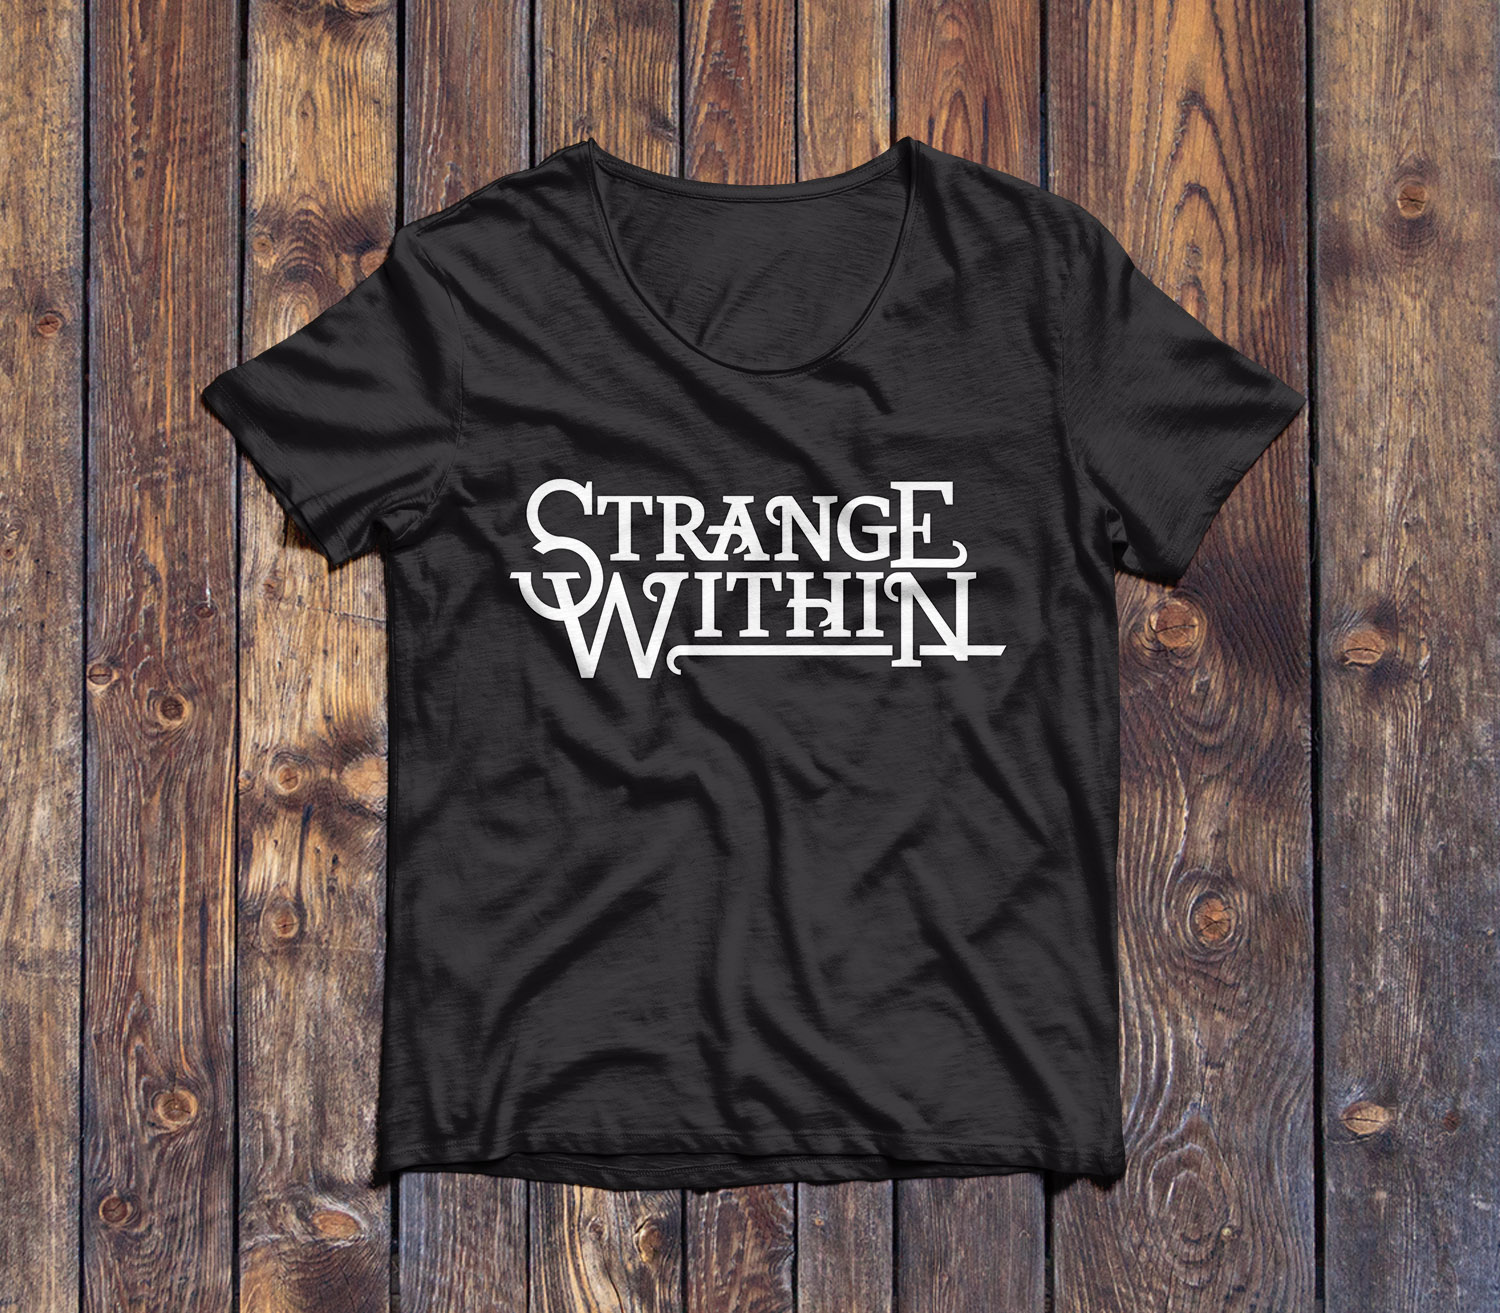 Justinvanwickeren_design_STRANGE WITHIN_Shirt_Front